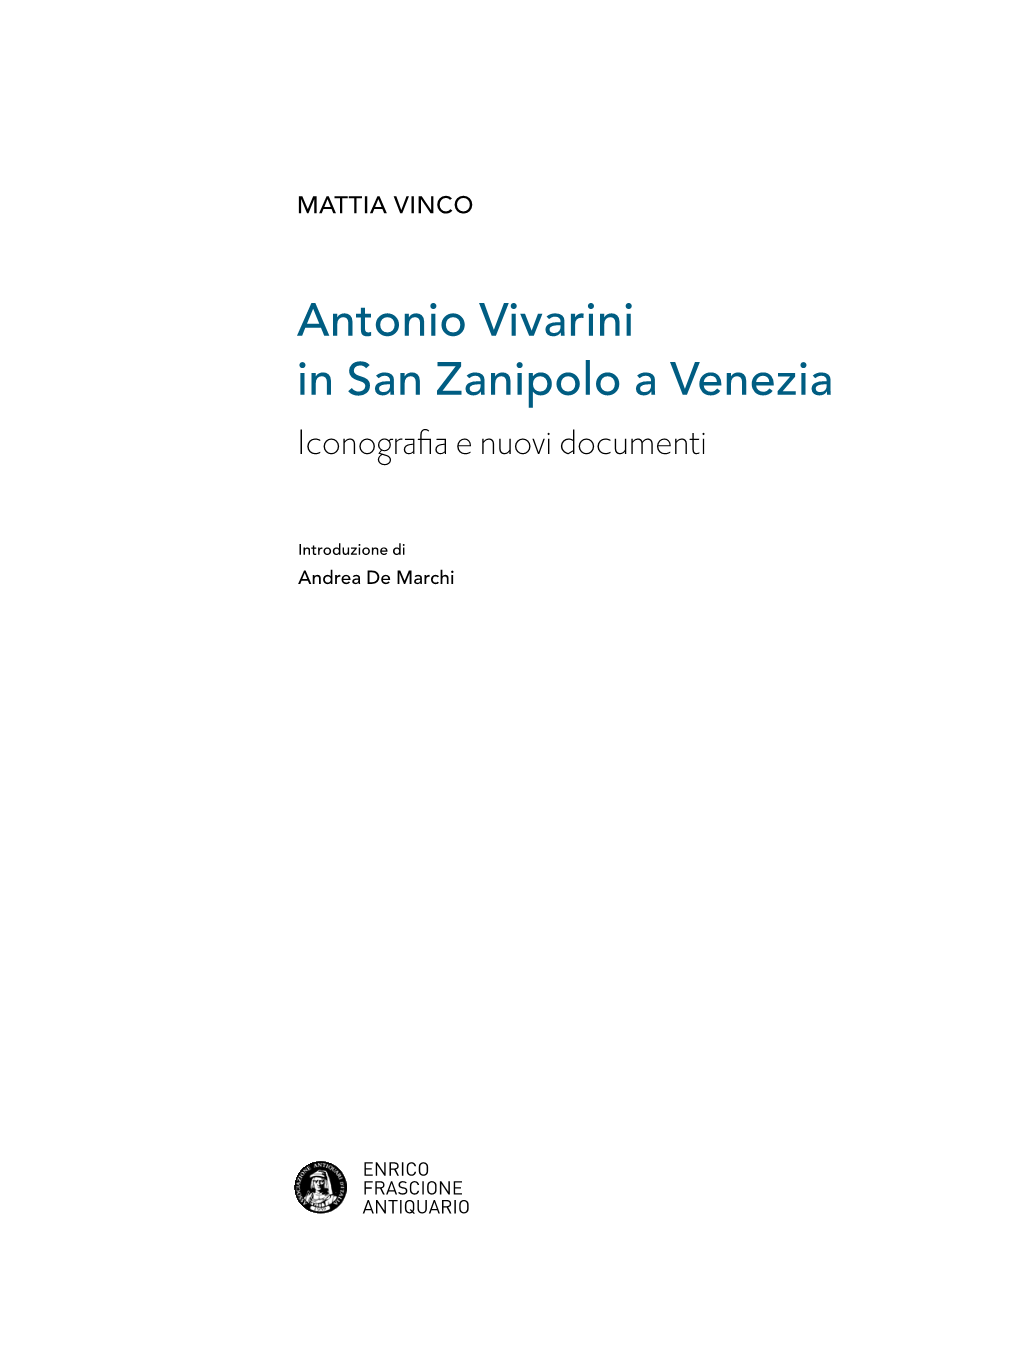 Antonio Vivarini in San Zanipolo a Venezia Iconografia E Nuovi Documenti